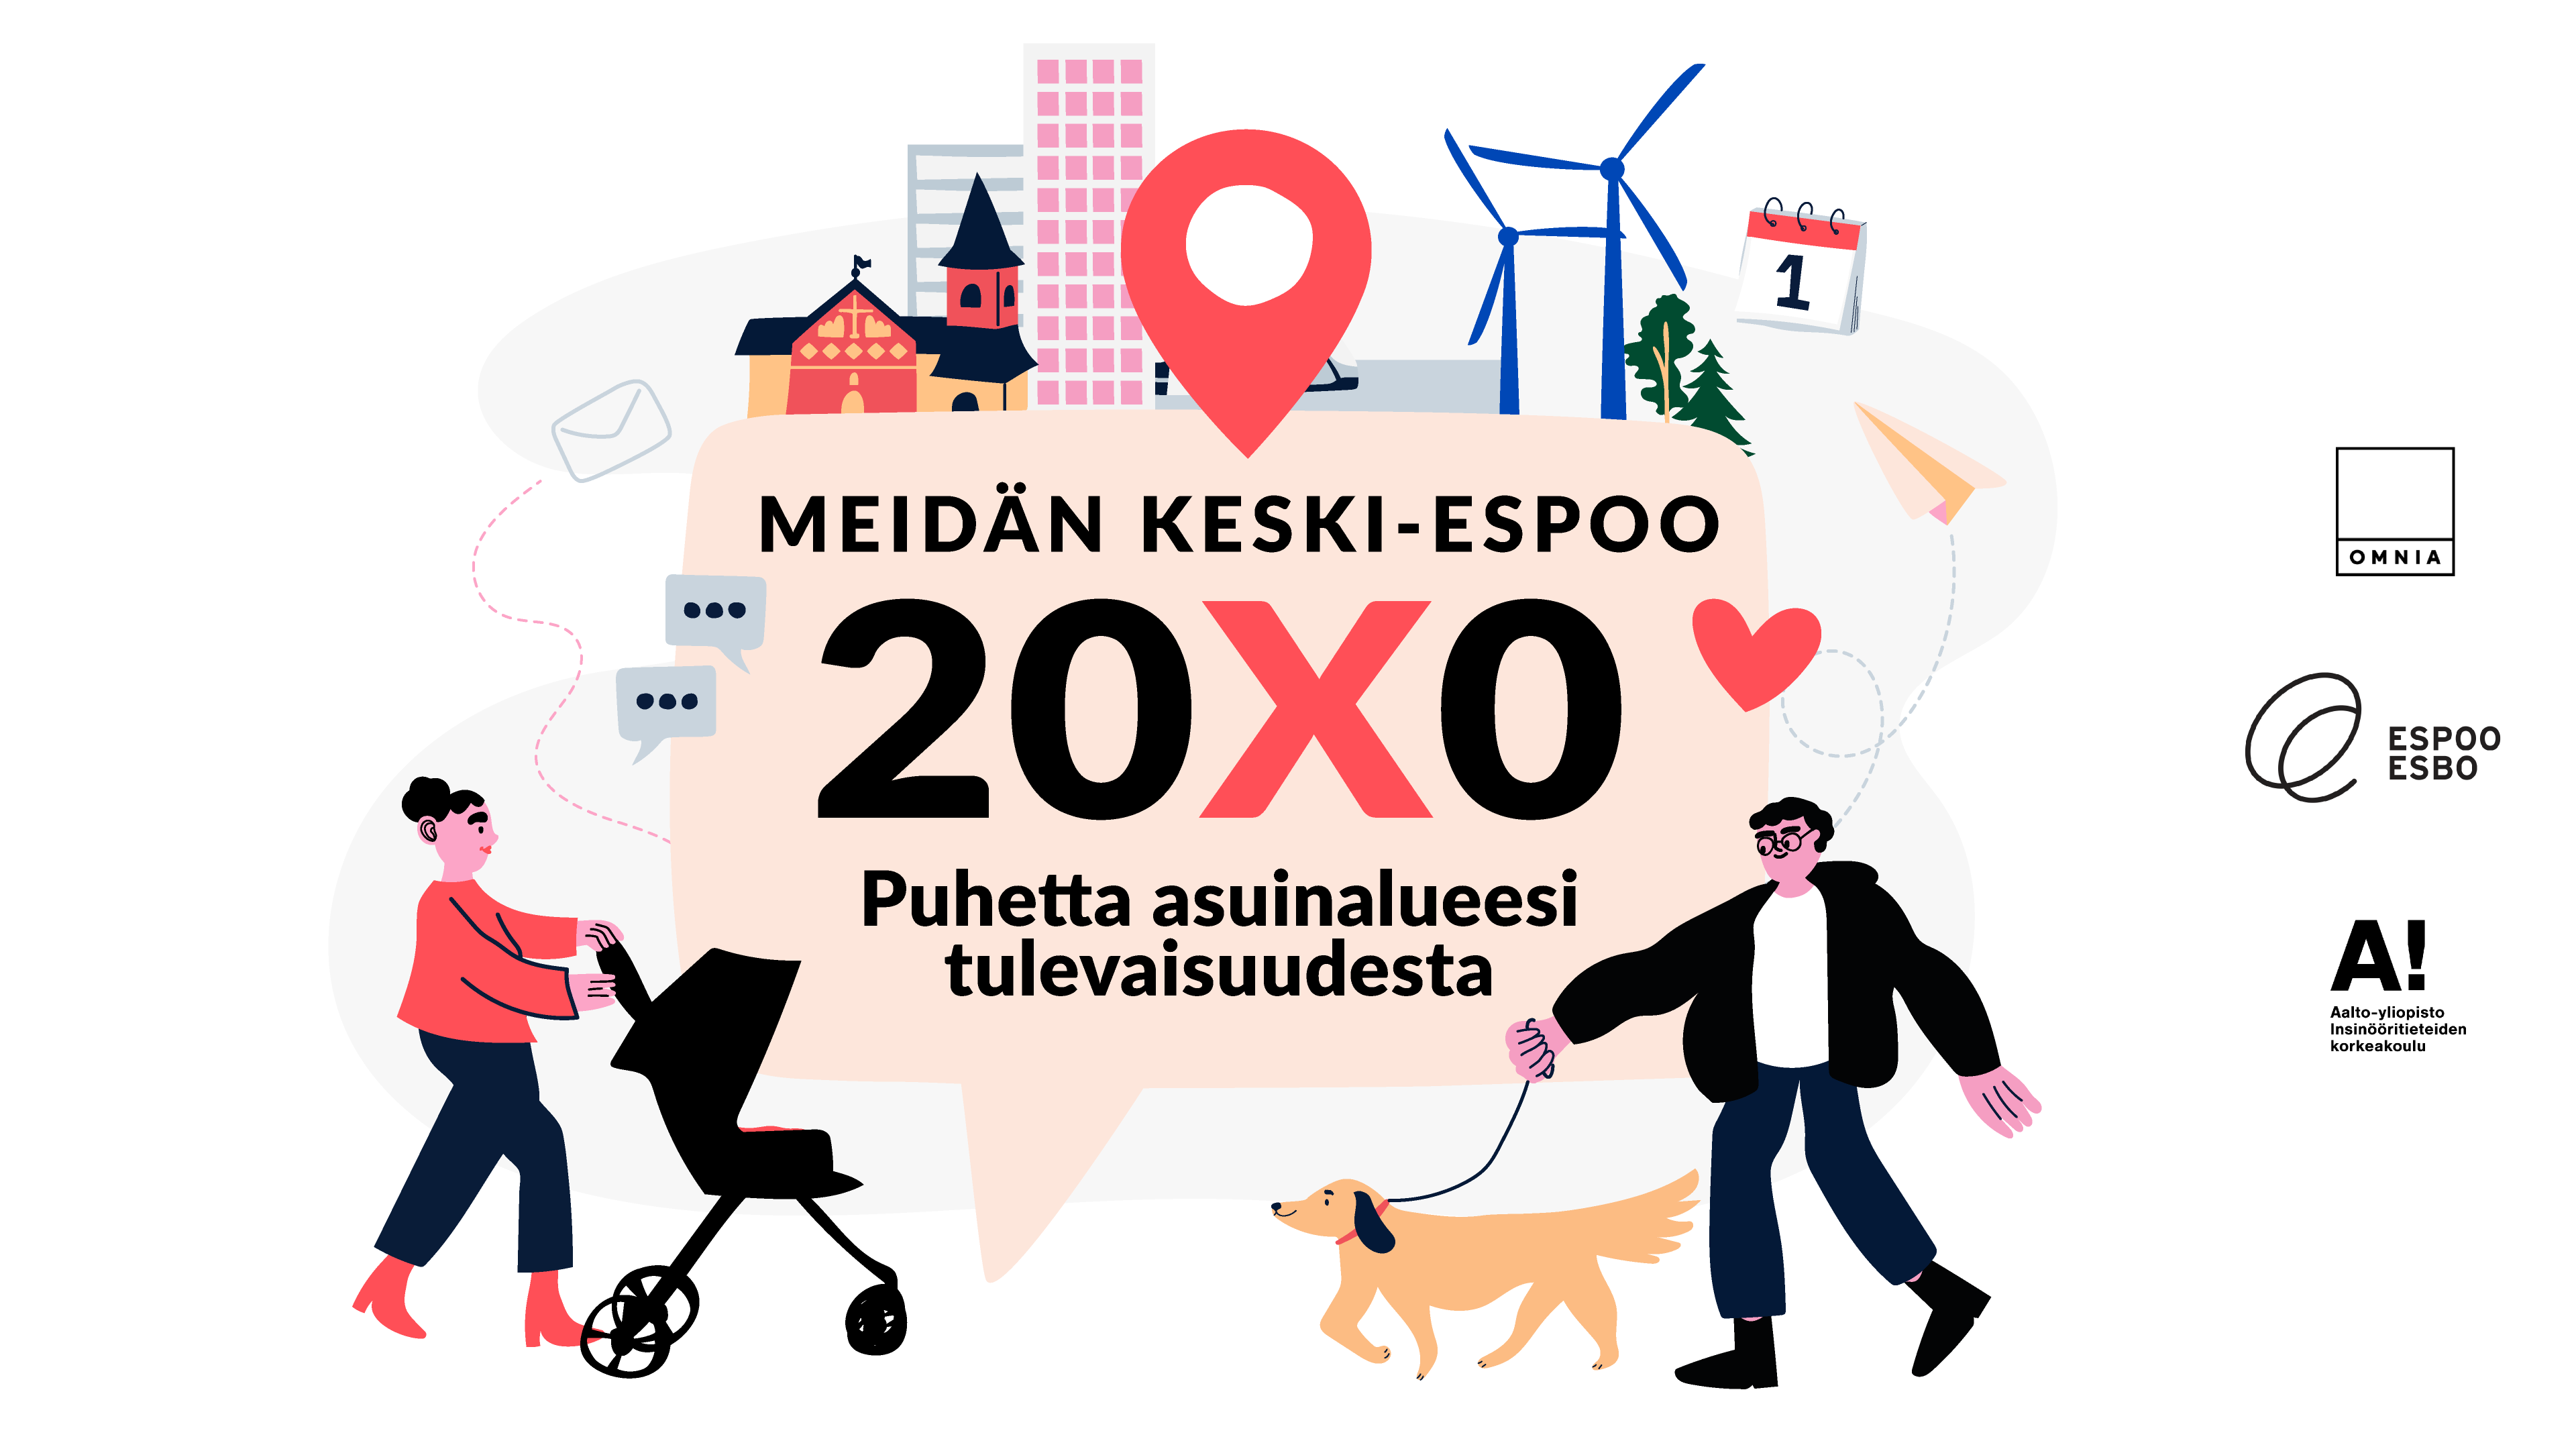 Piirroskuvassa ihmisiä tulevaisuuden Espoossa ja keskellä puhekupla, jossa teksti "Meidän keski-Espoo 20X0. Puhetta asuinalueesi tulevaisuudesta".